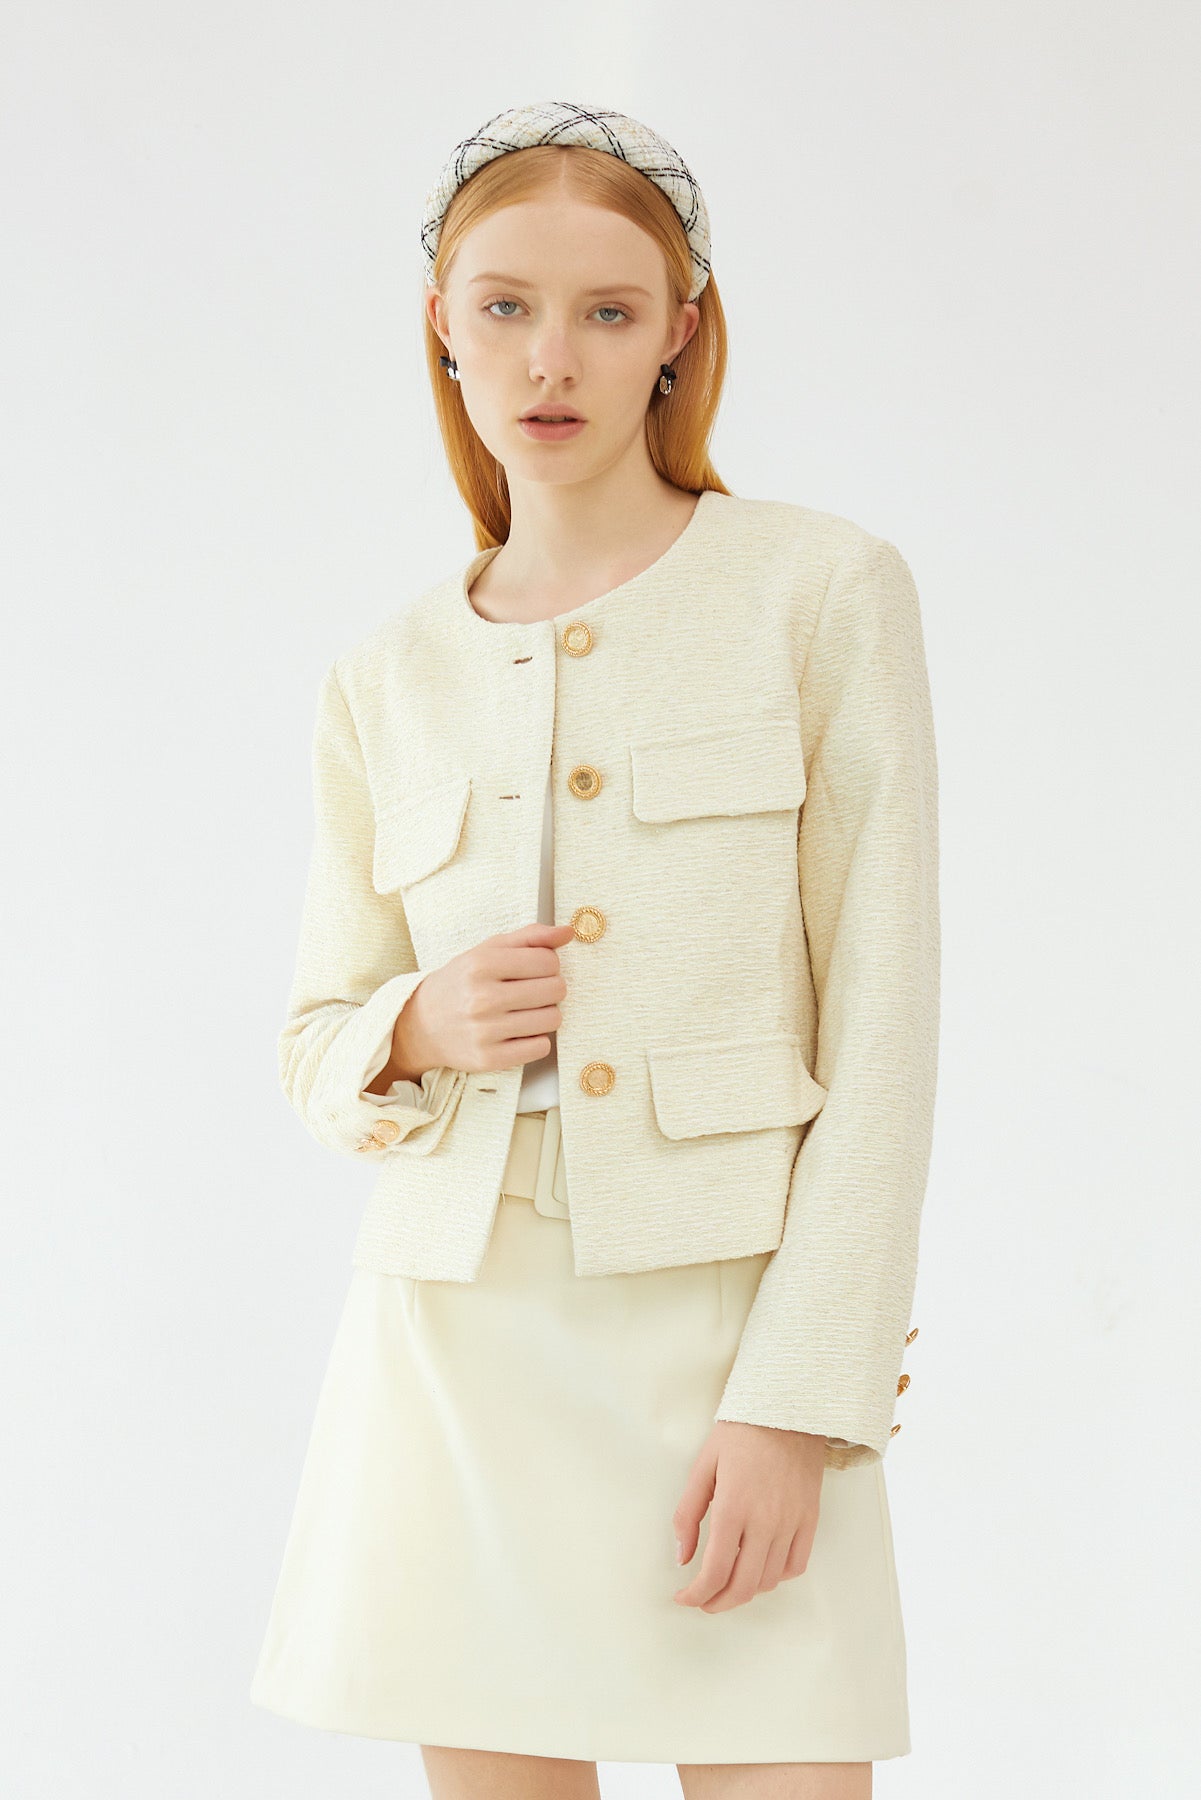 Chanel Light Pink & White Tweed Fringe Jacket Sz FR 40 IT 44 US 8 UK/AU 12